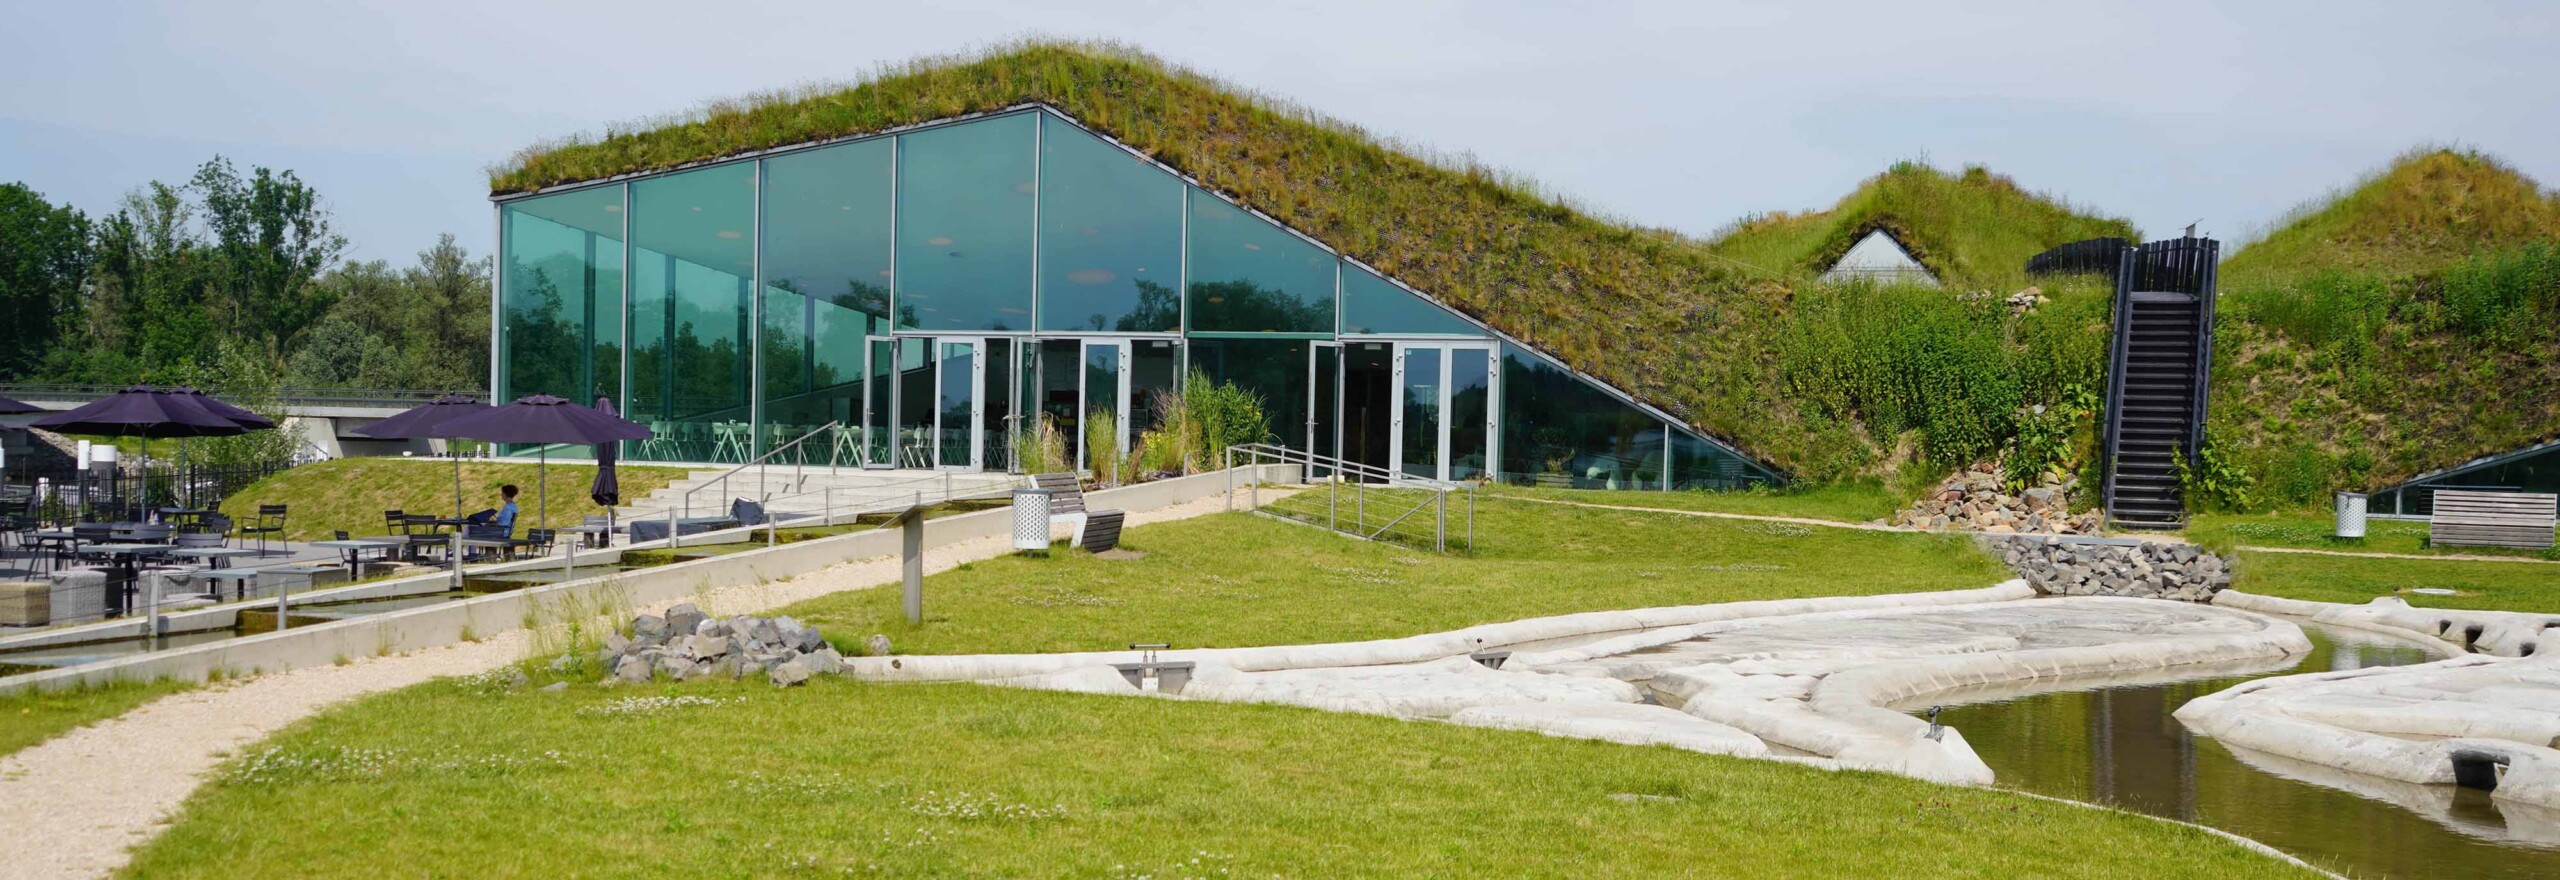 bio architetture green roof Biesbosch Museum